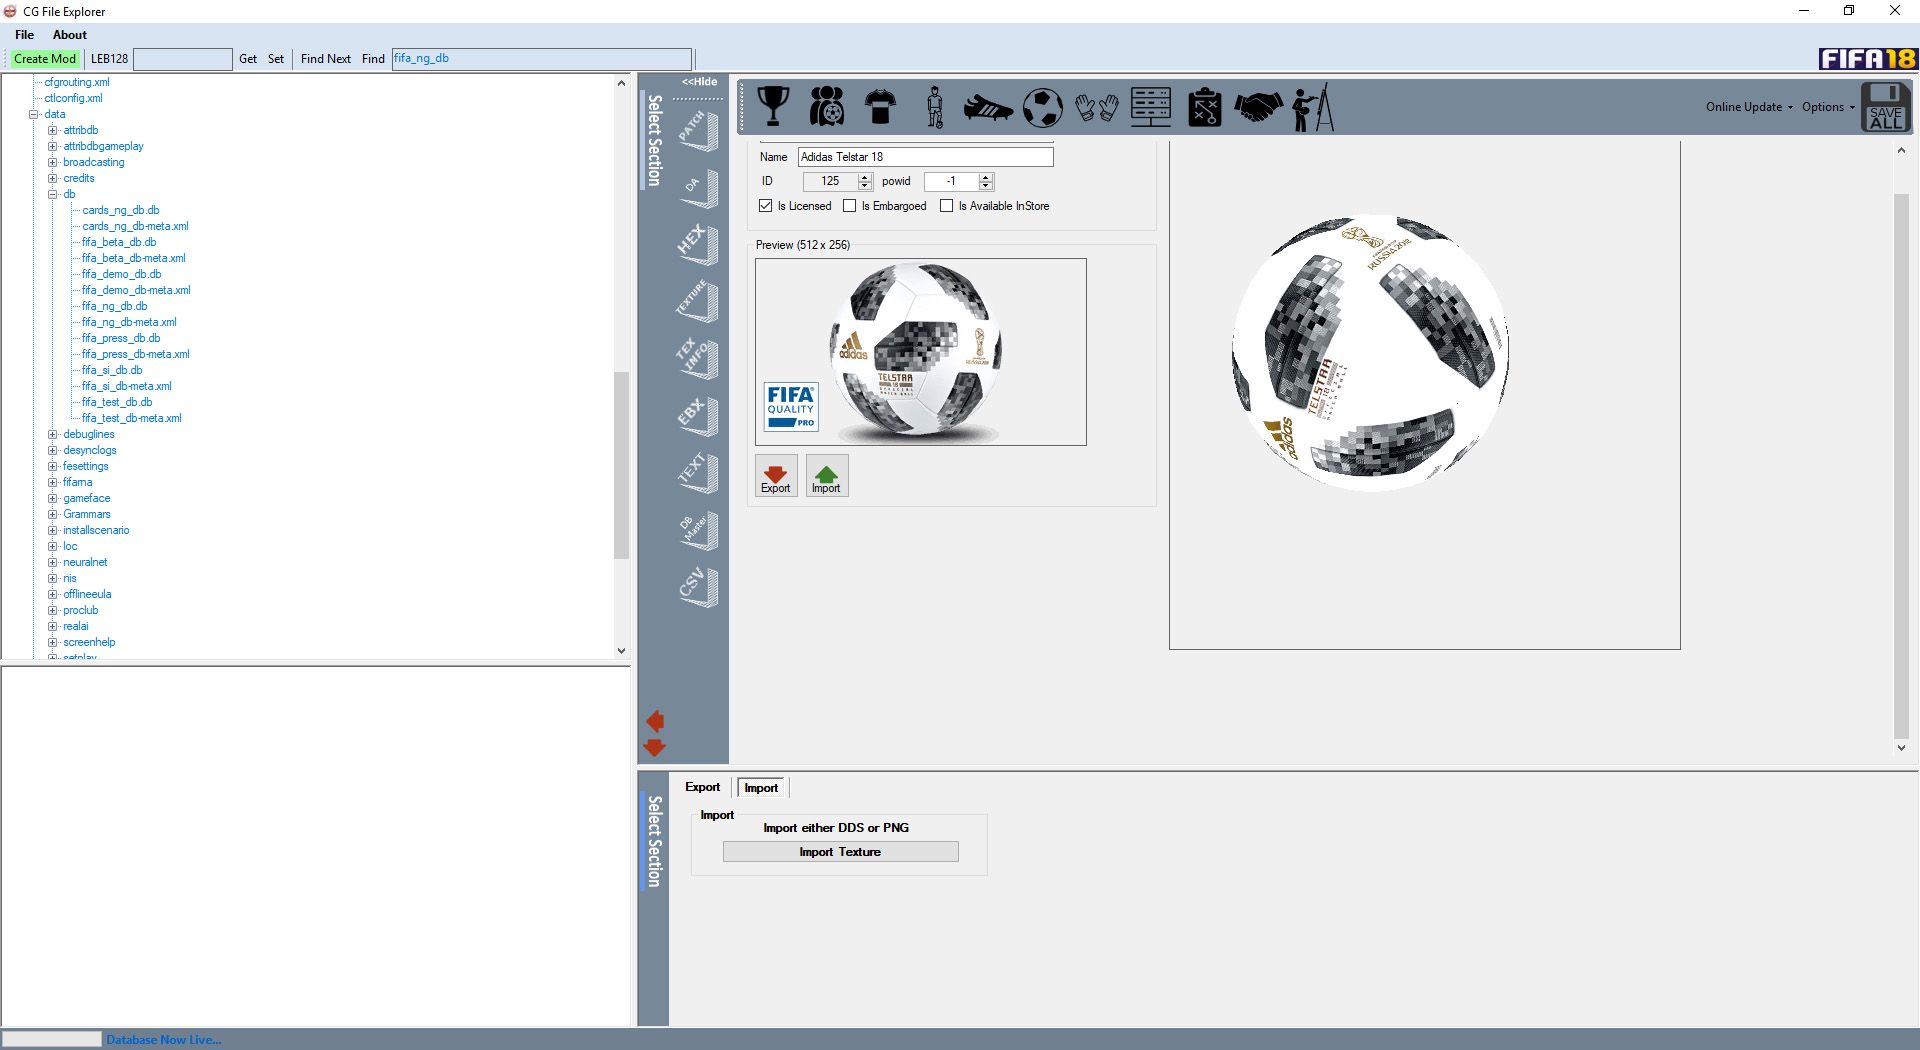 Fifa 18 Cg File Explorer Download - Colaboratory